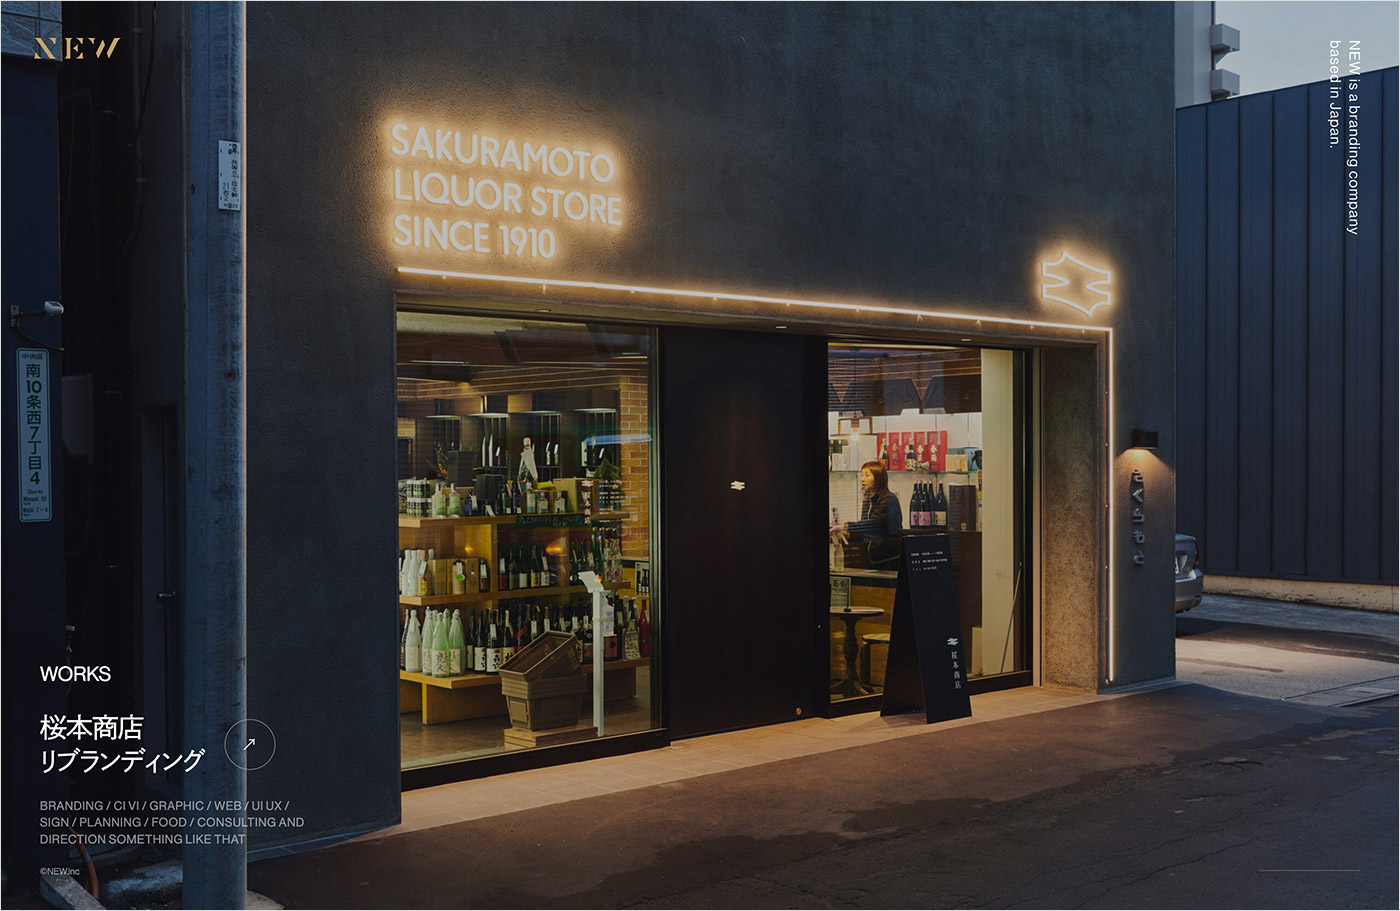 札幌 店舗デザイン・ブランディング | NEW inc.ウェブサイトの画面キャプチャ画像